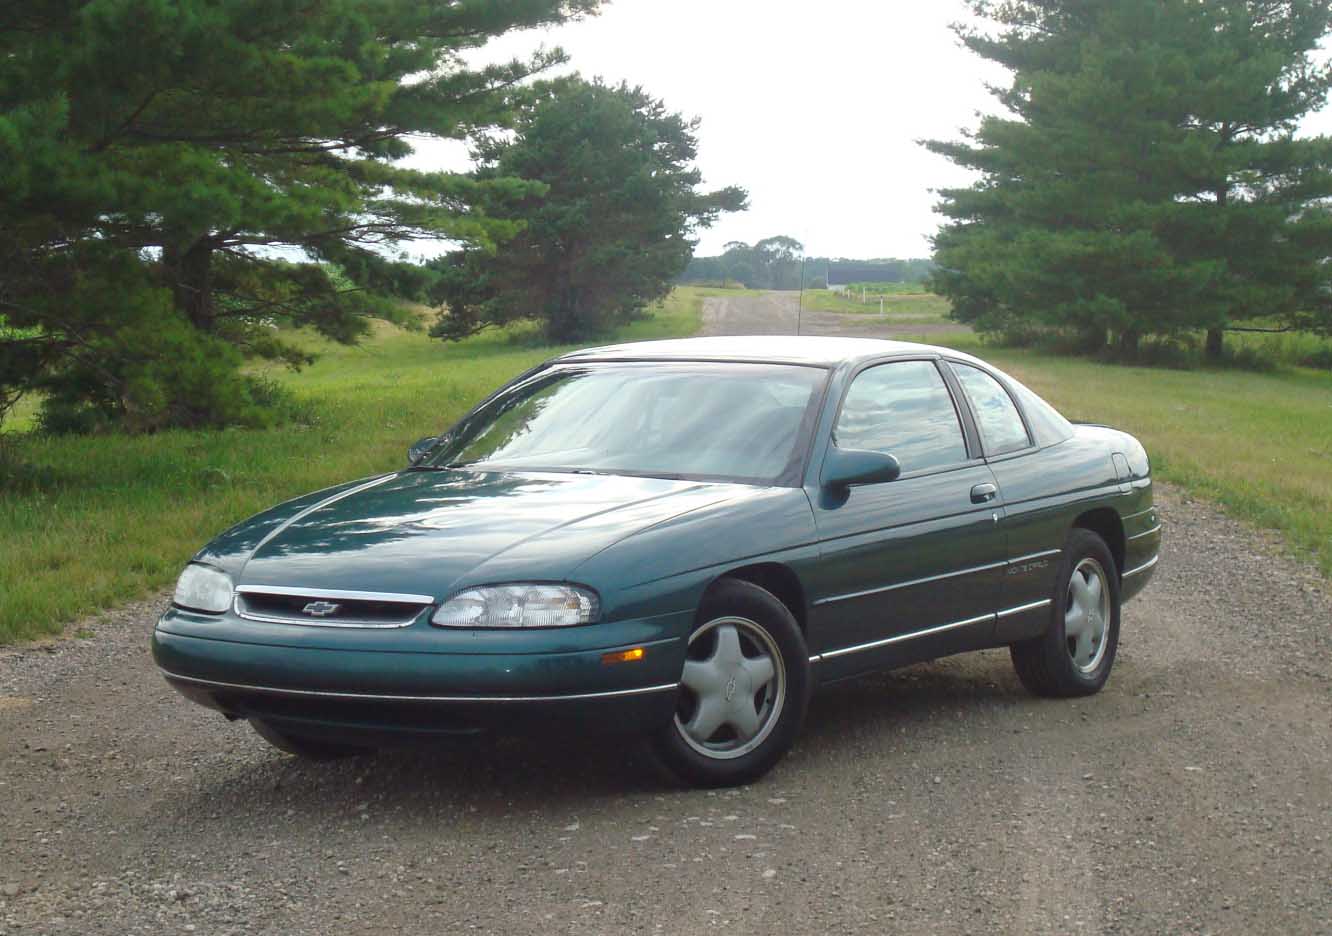 File:1997 Chevrolet Monte Carlo.jpg - Wikipedia